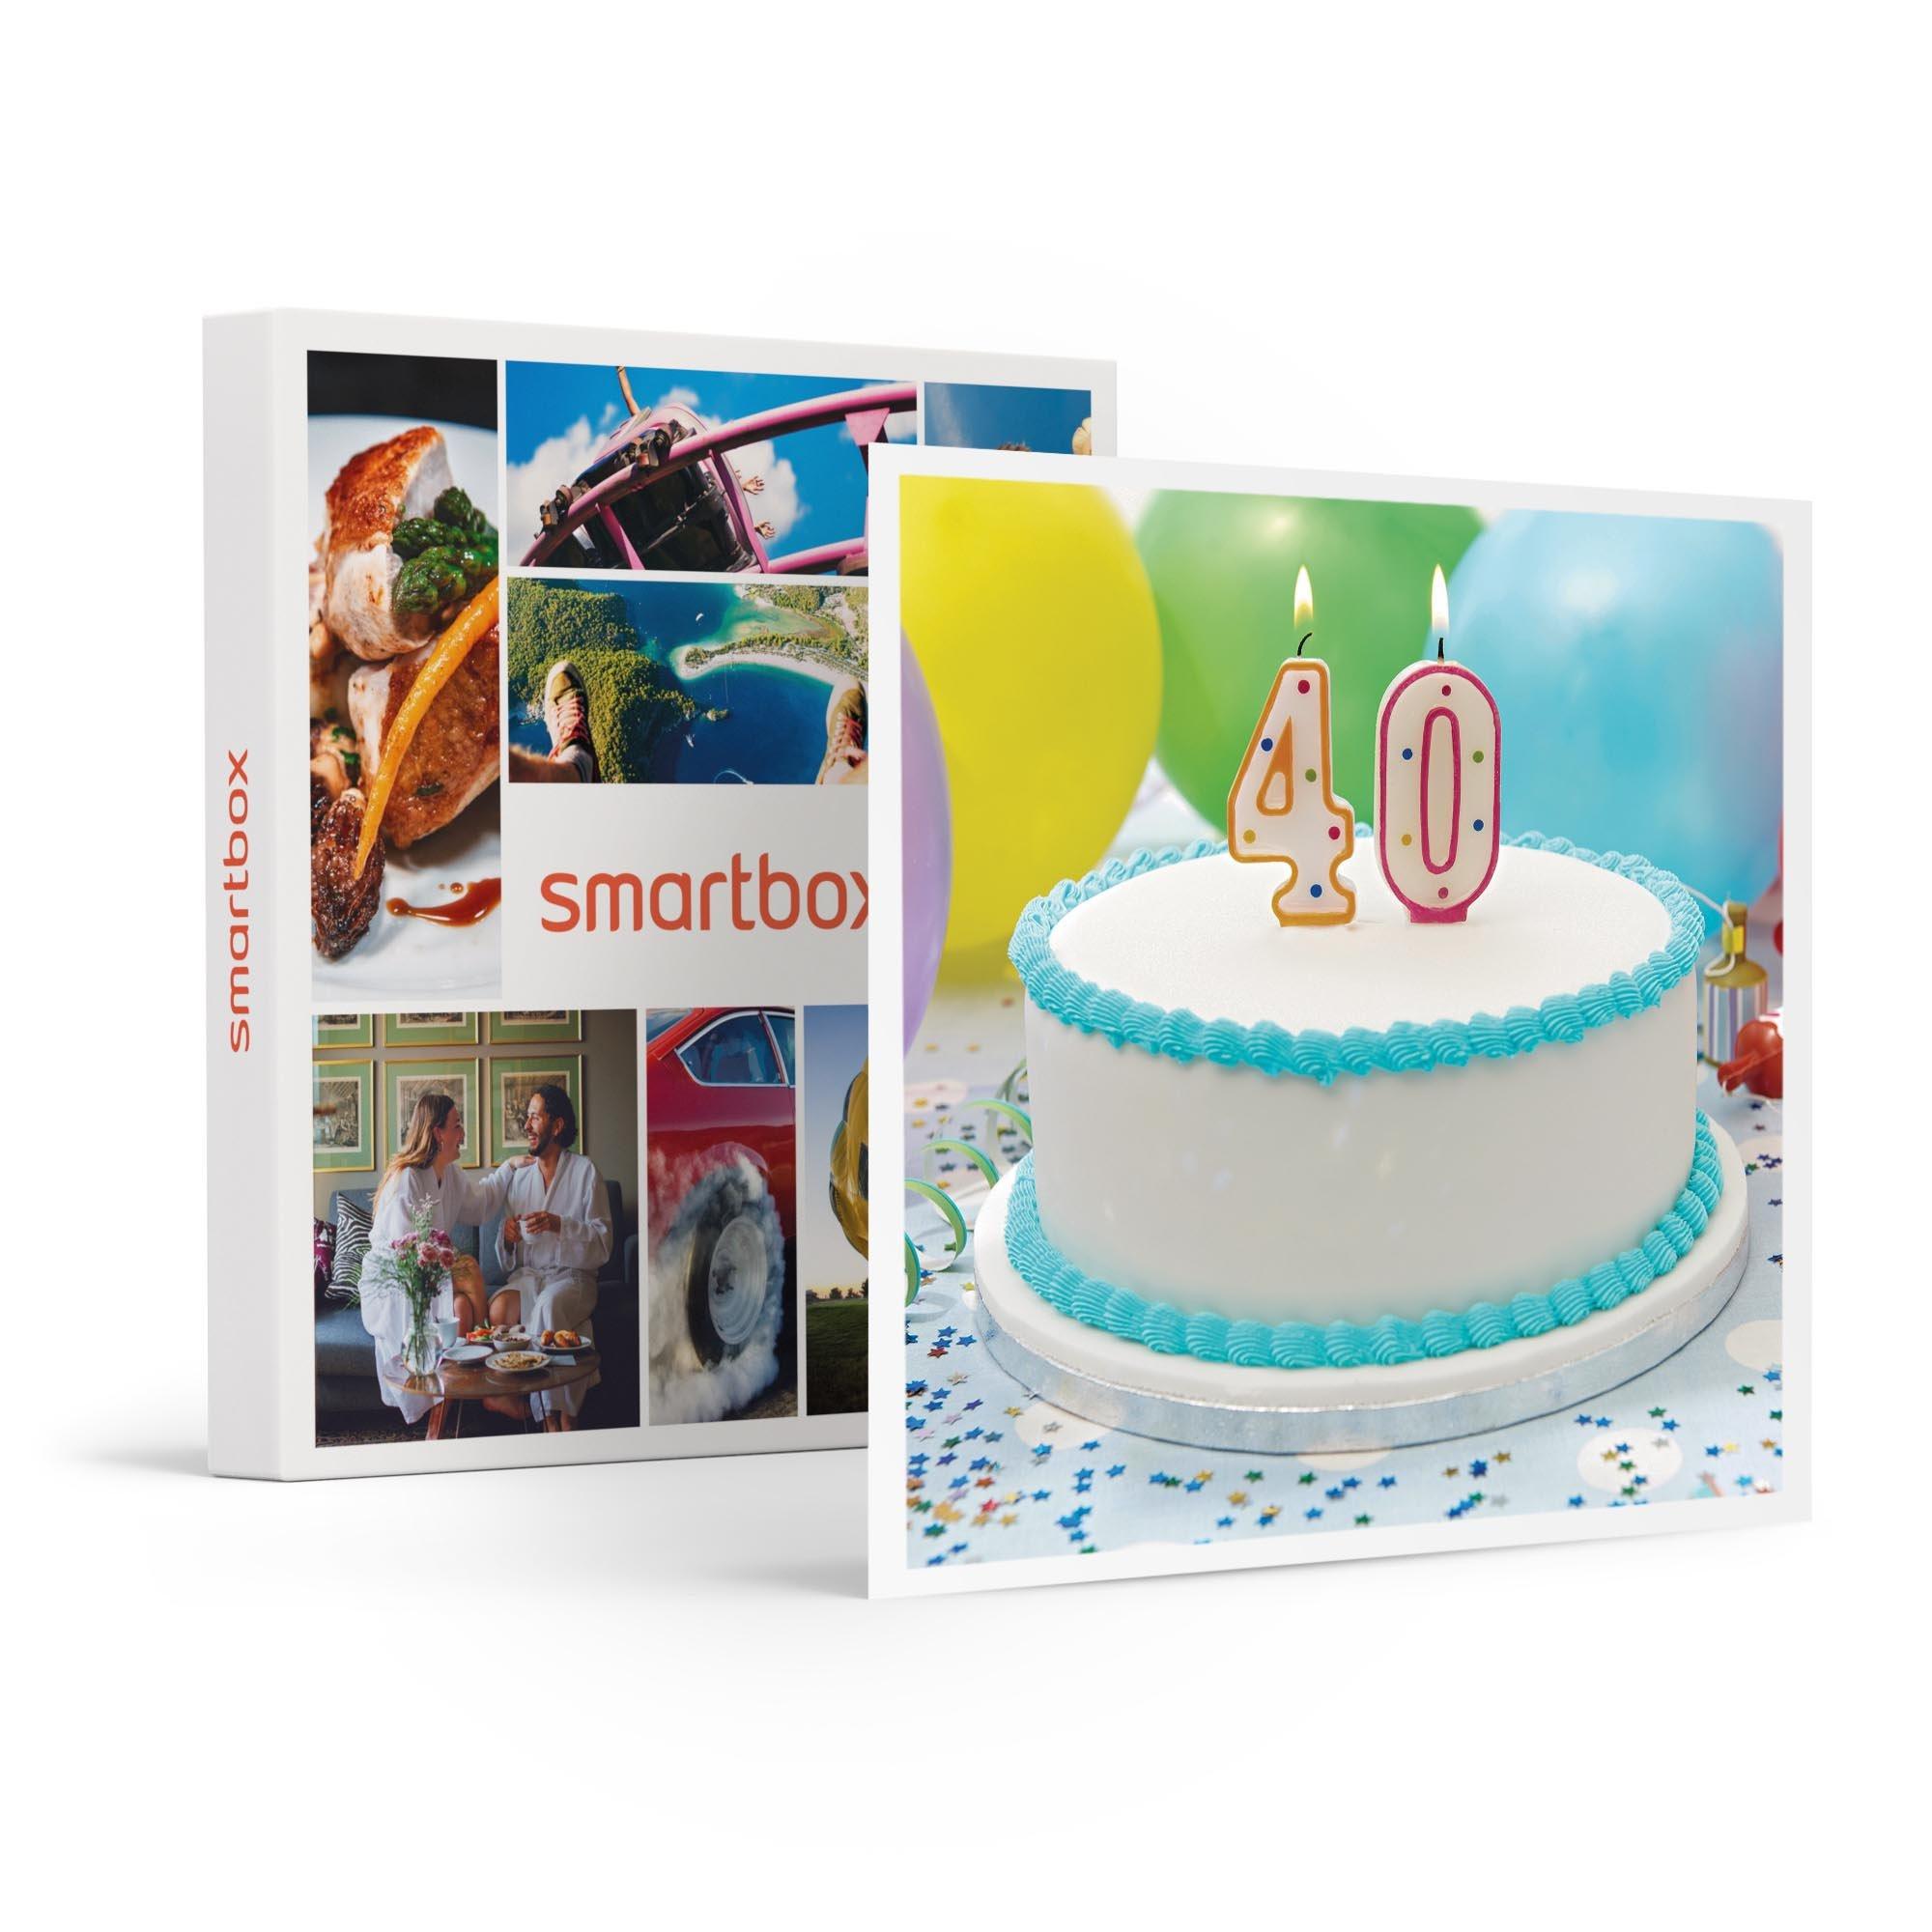 Smartbox Buon compleanno! Viaggi, cene, avventure o pause benessere per i  tuoi 40 anni - Cofanetto regalo